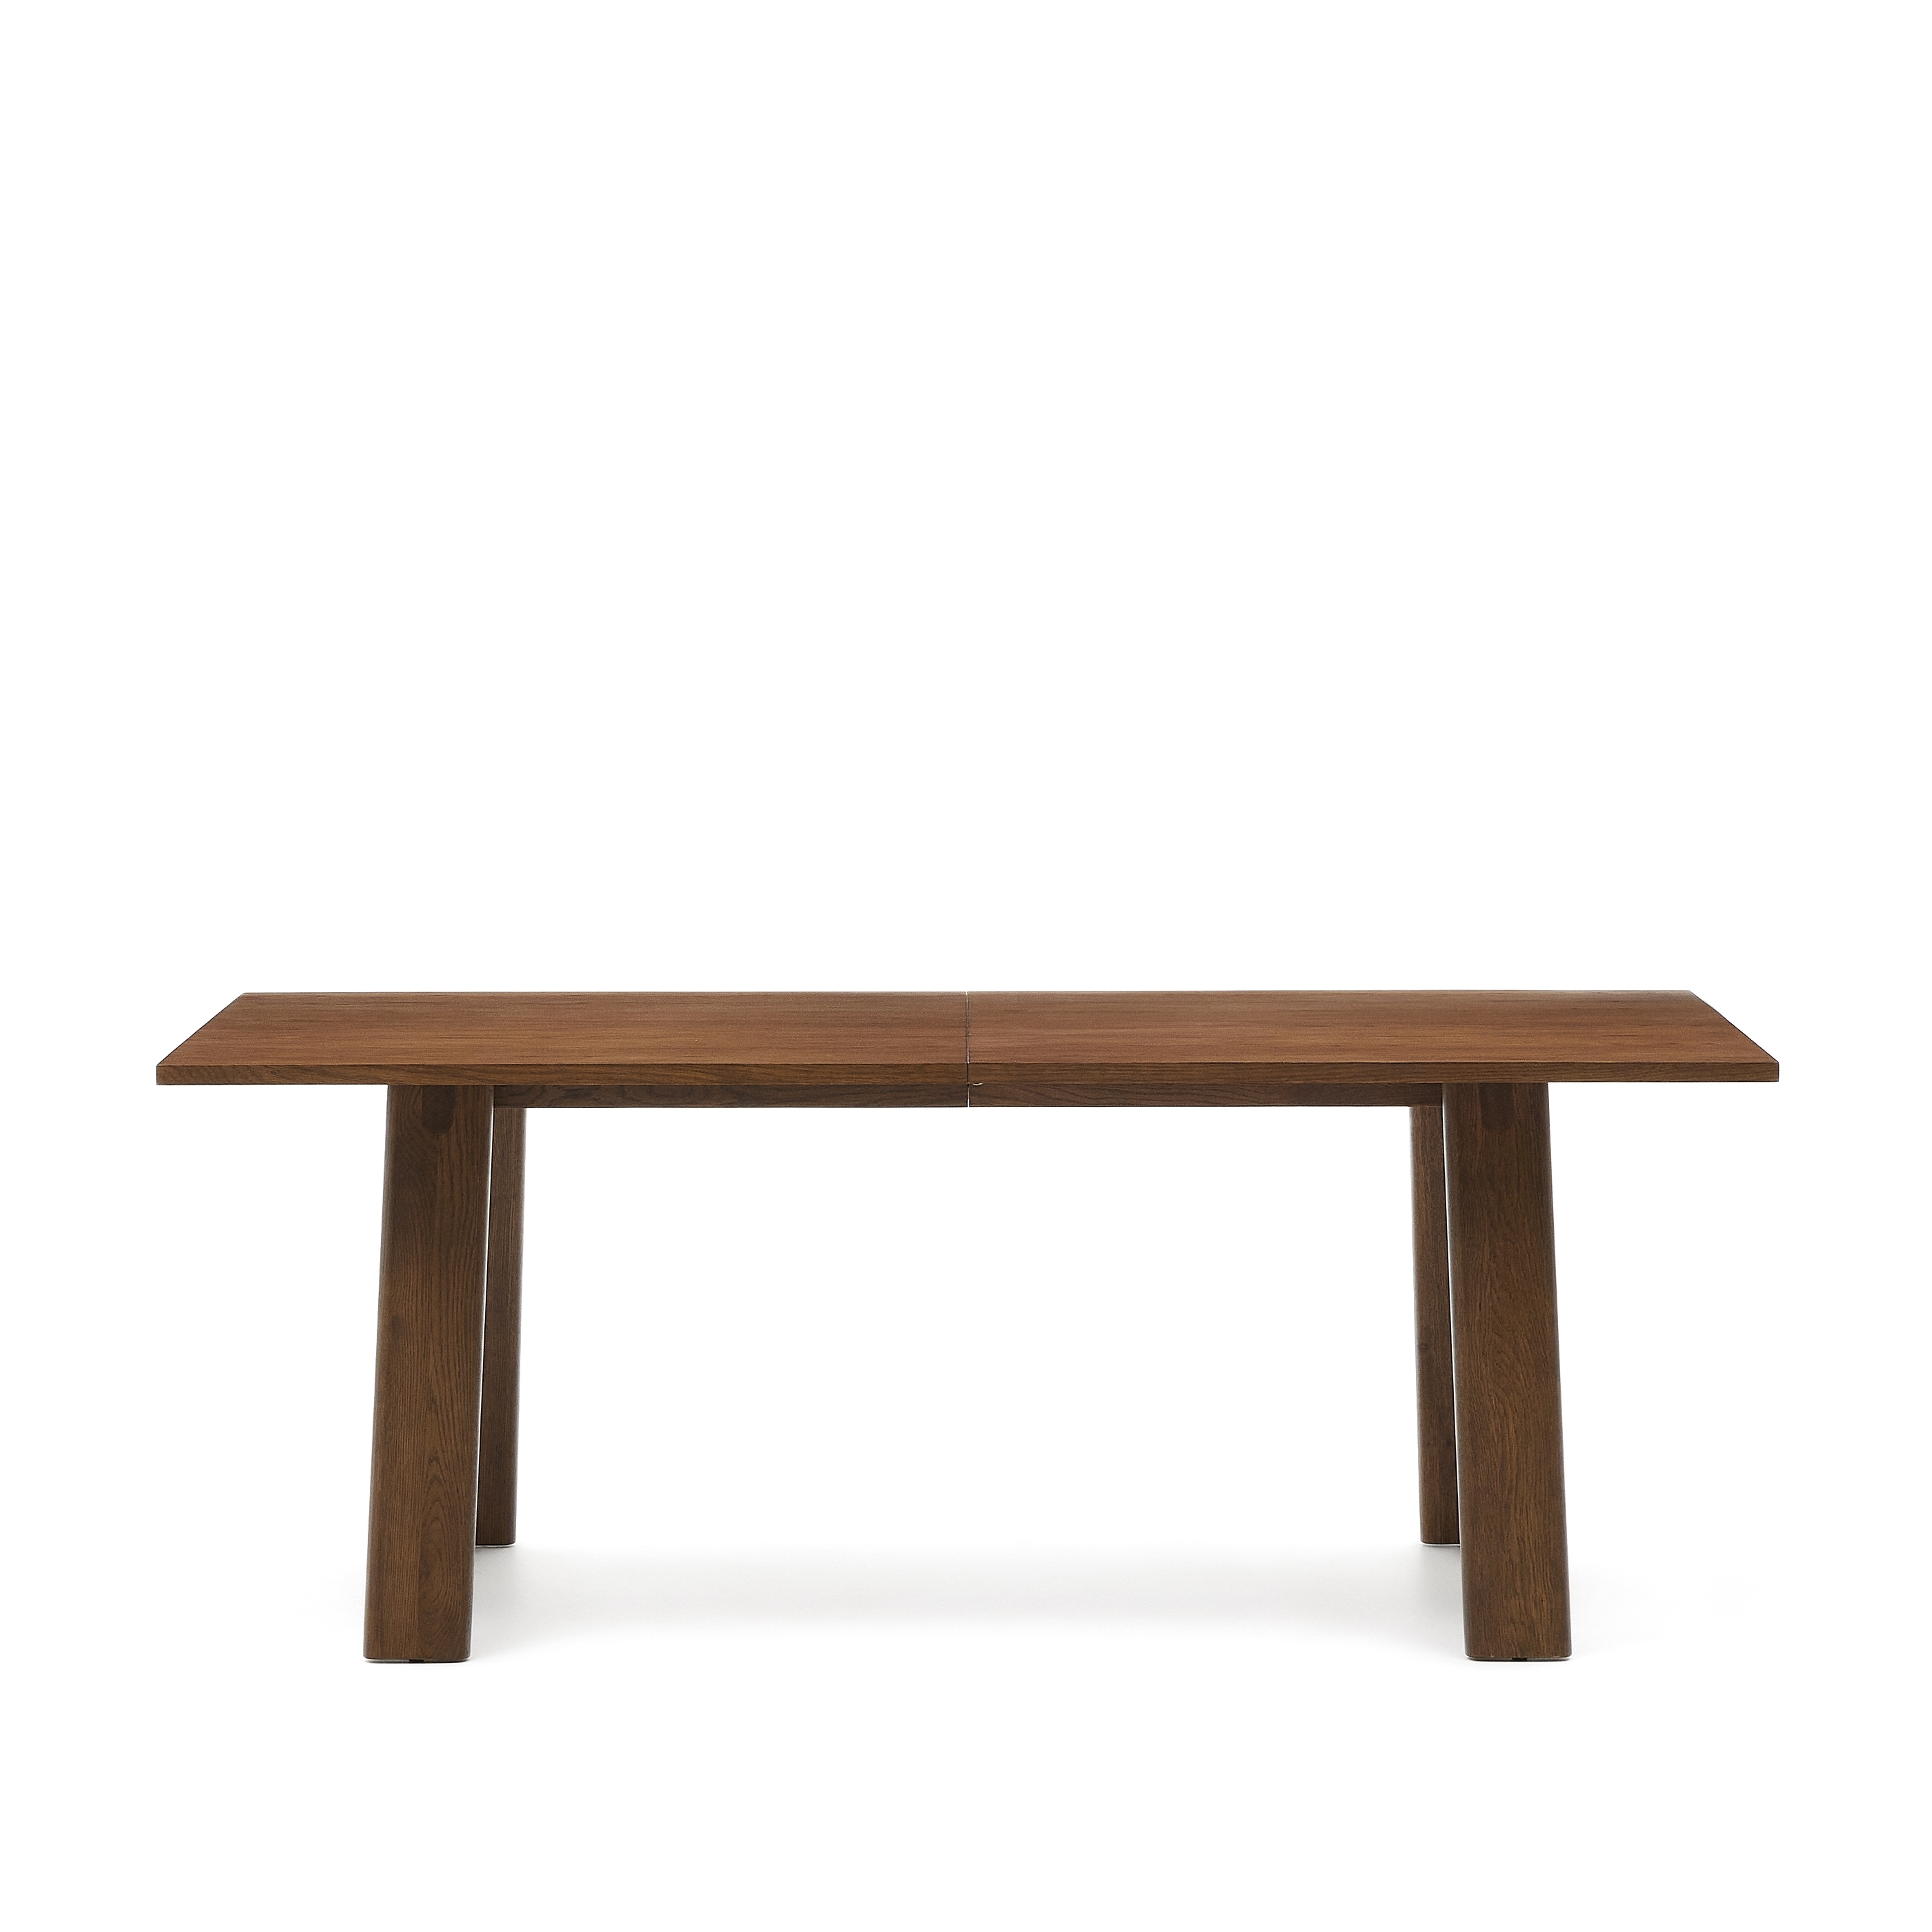 Раздвижной обеденный стол La Forma Arlen шпон дуба с отделкой ореха 95х200-250 см 189963